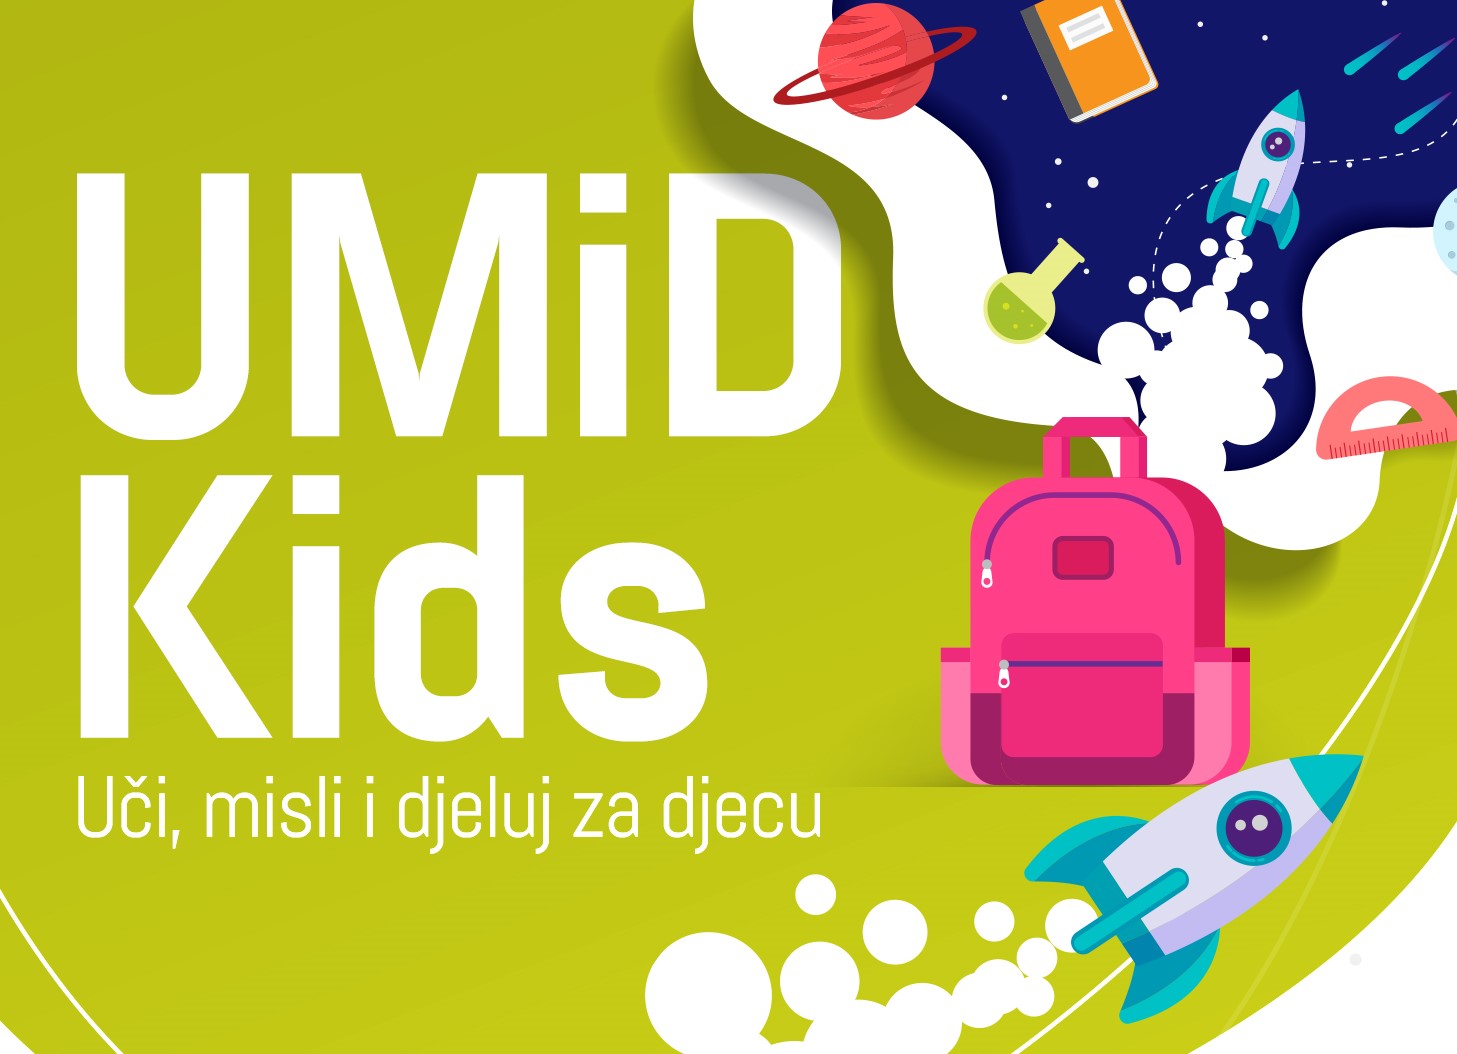 UMID Kids FB 2